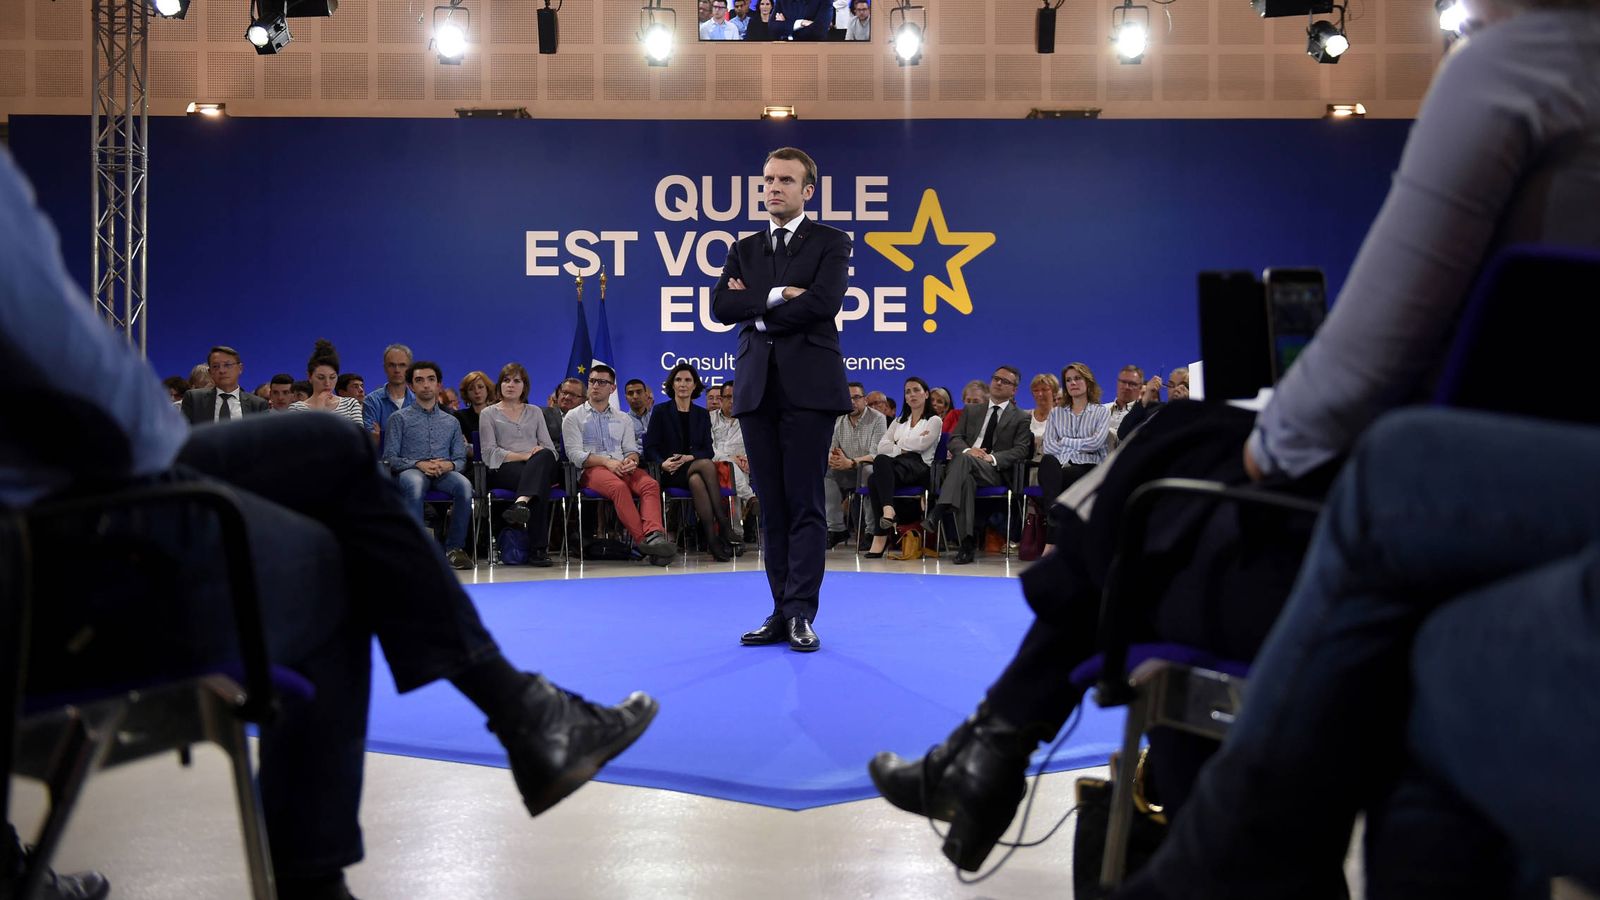 Foto: El presidente francés Emmanuel Macron durante unas sesiones de consultas de ciudadanos sobre Europa, en Epinal. (Reuters)